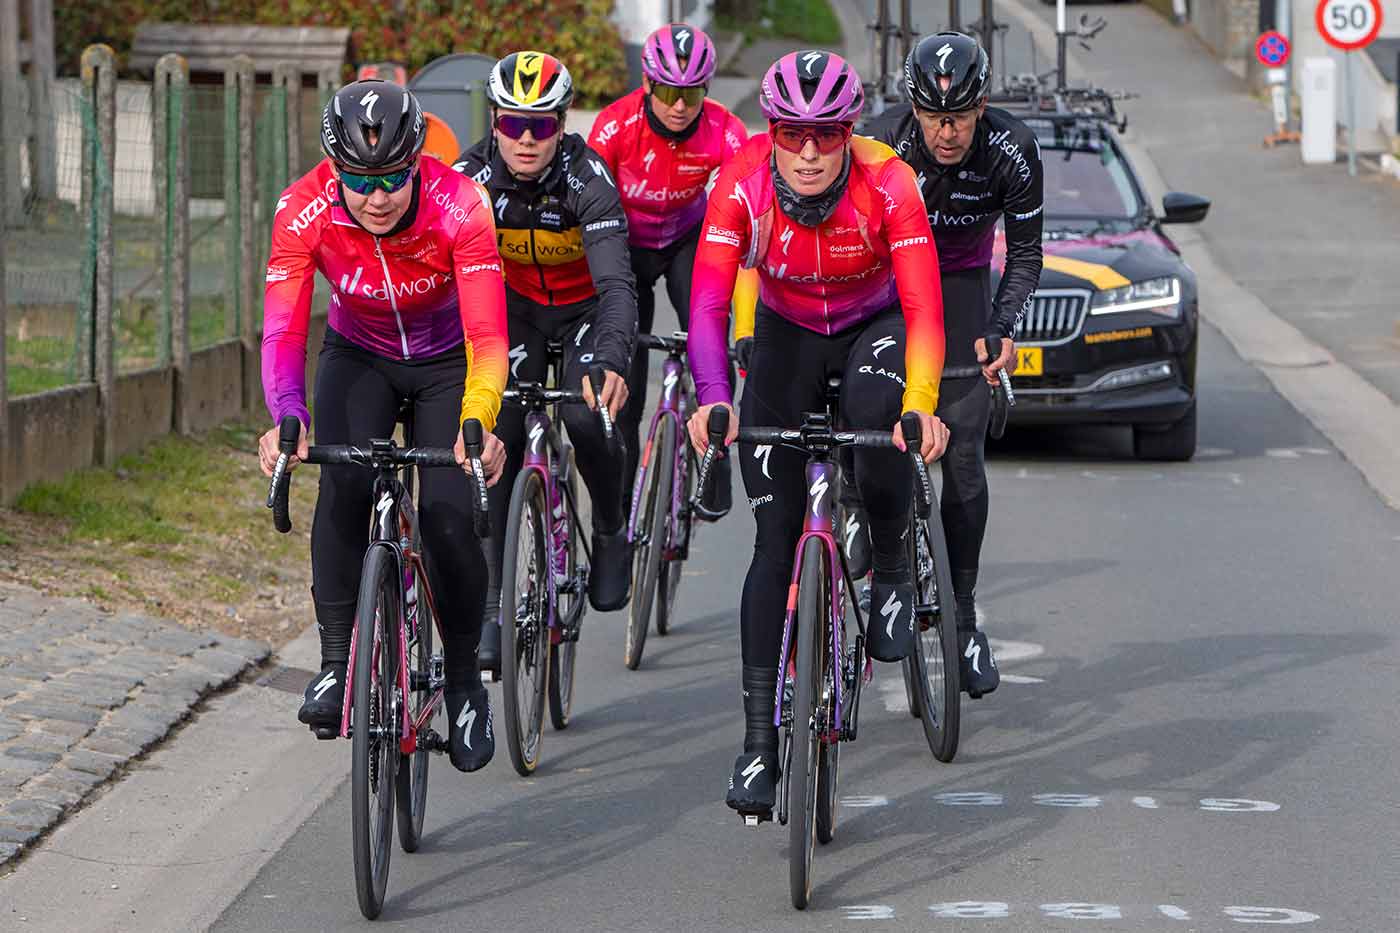 Het vrouwenwielrennen groeit snel en daar komen nieuwe uitdagingen bij kijken Anna van der Breggen, interview deel 2